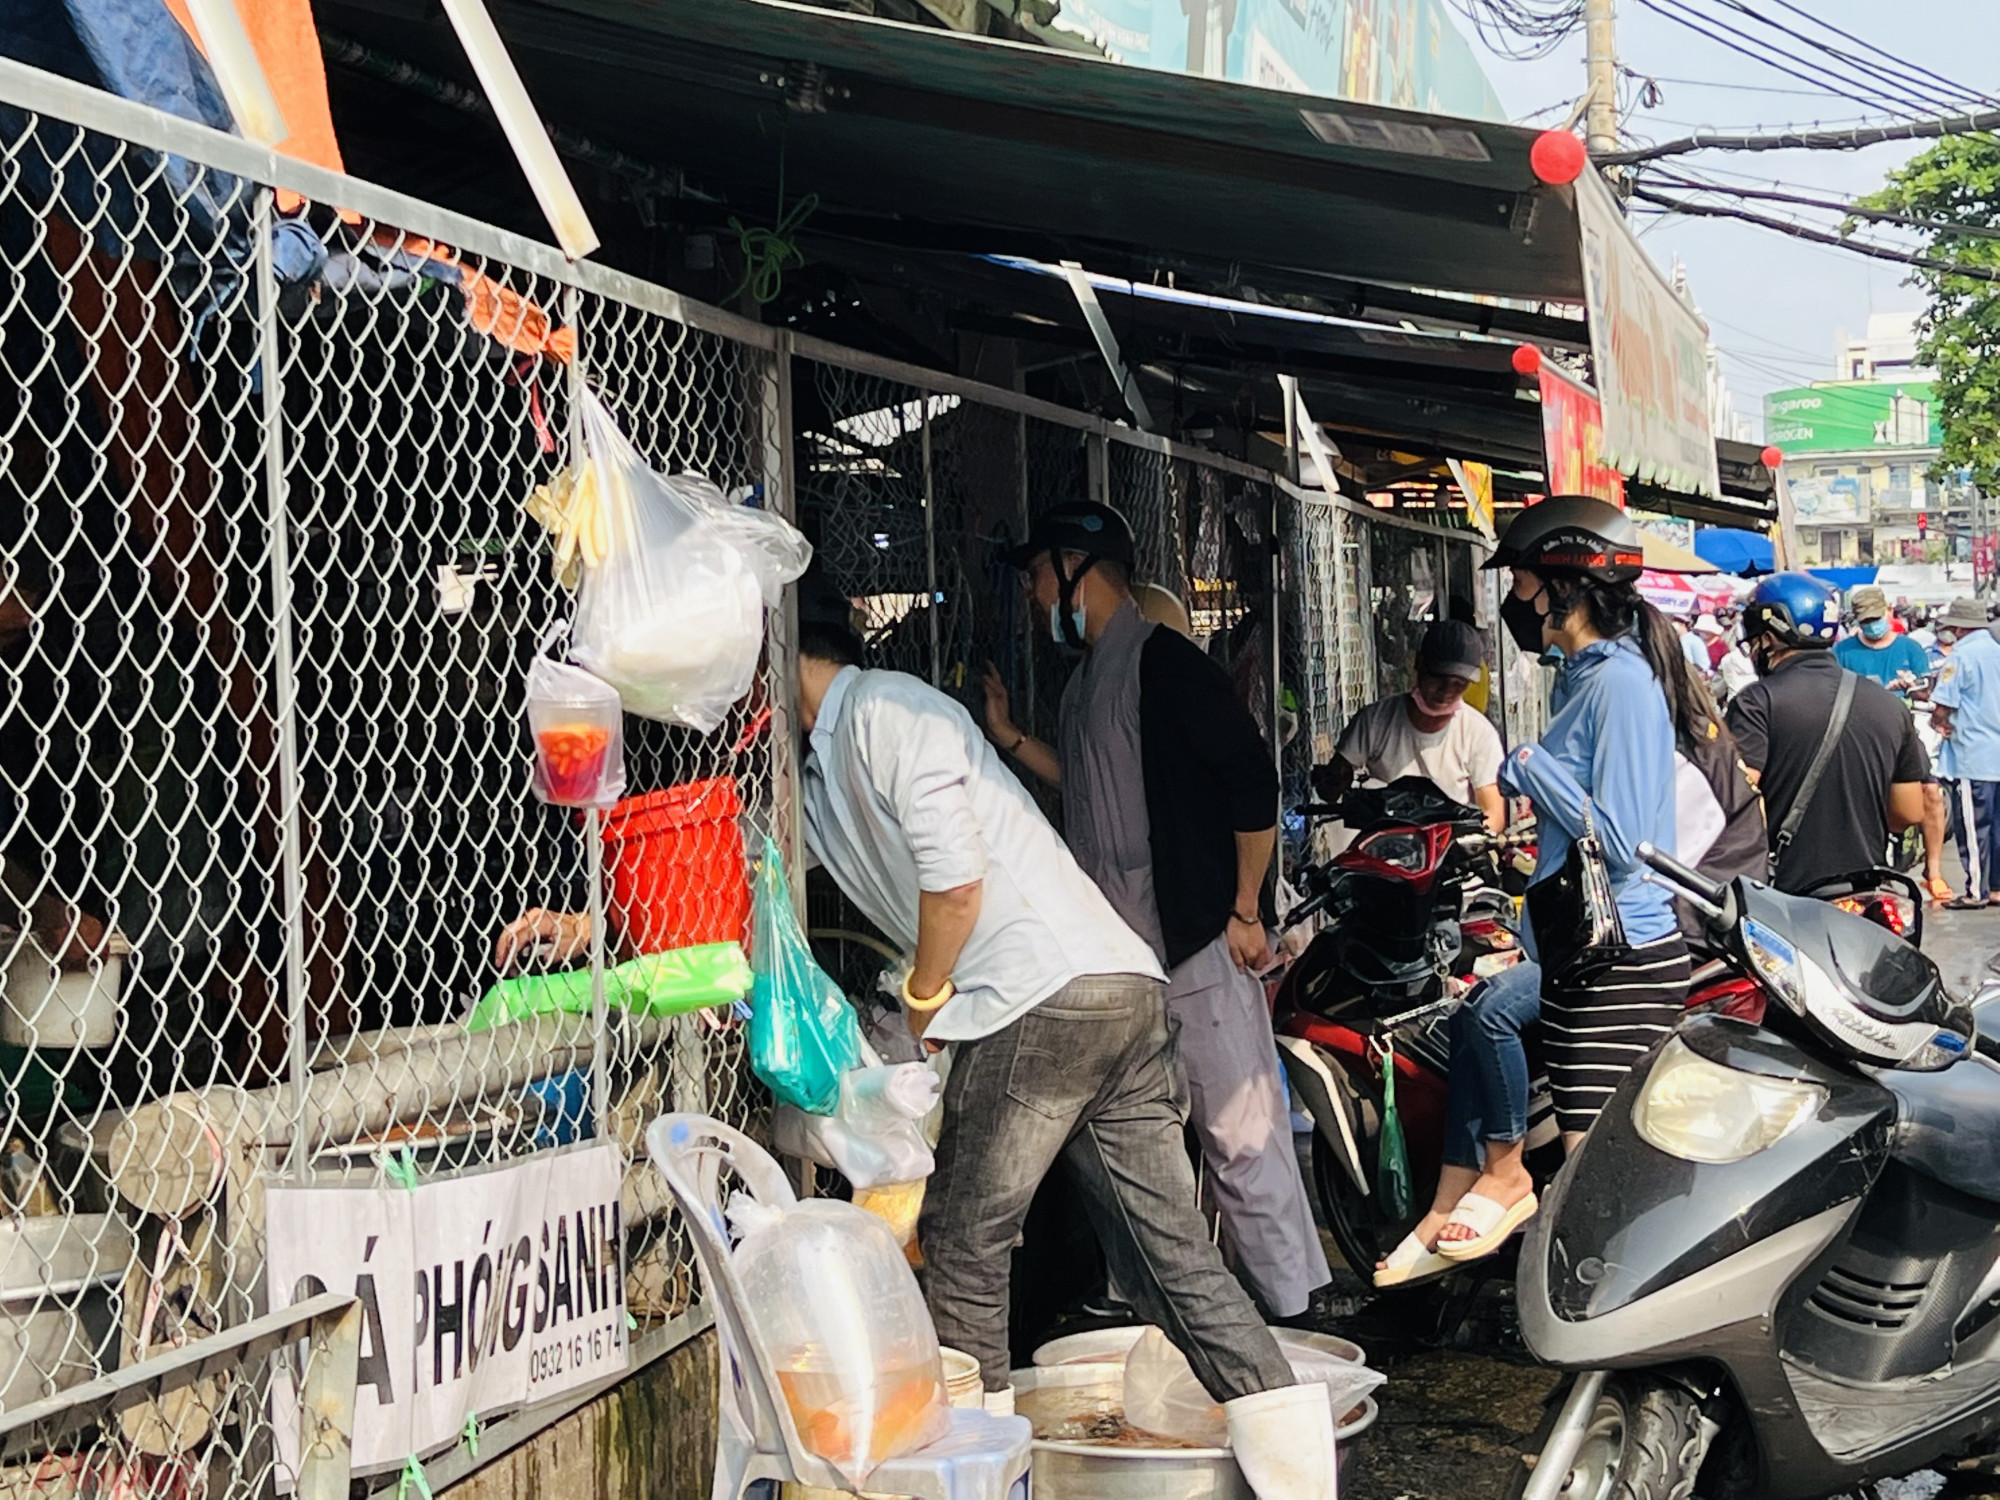 Một điểm bán cá chép khác tại khu vực đường Bùi Hữu Nghĩa (quận Bình Thạnh) vẫn có nhiều người mua với số lượng vài chục con lớn để phóng sanh,